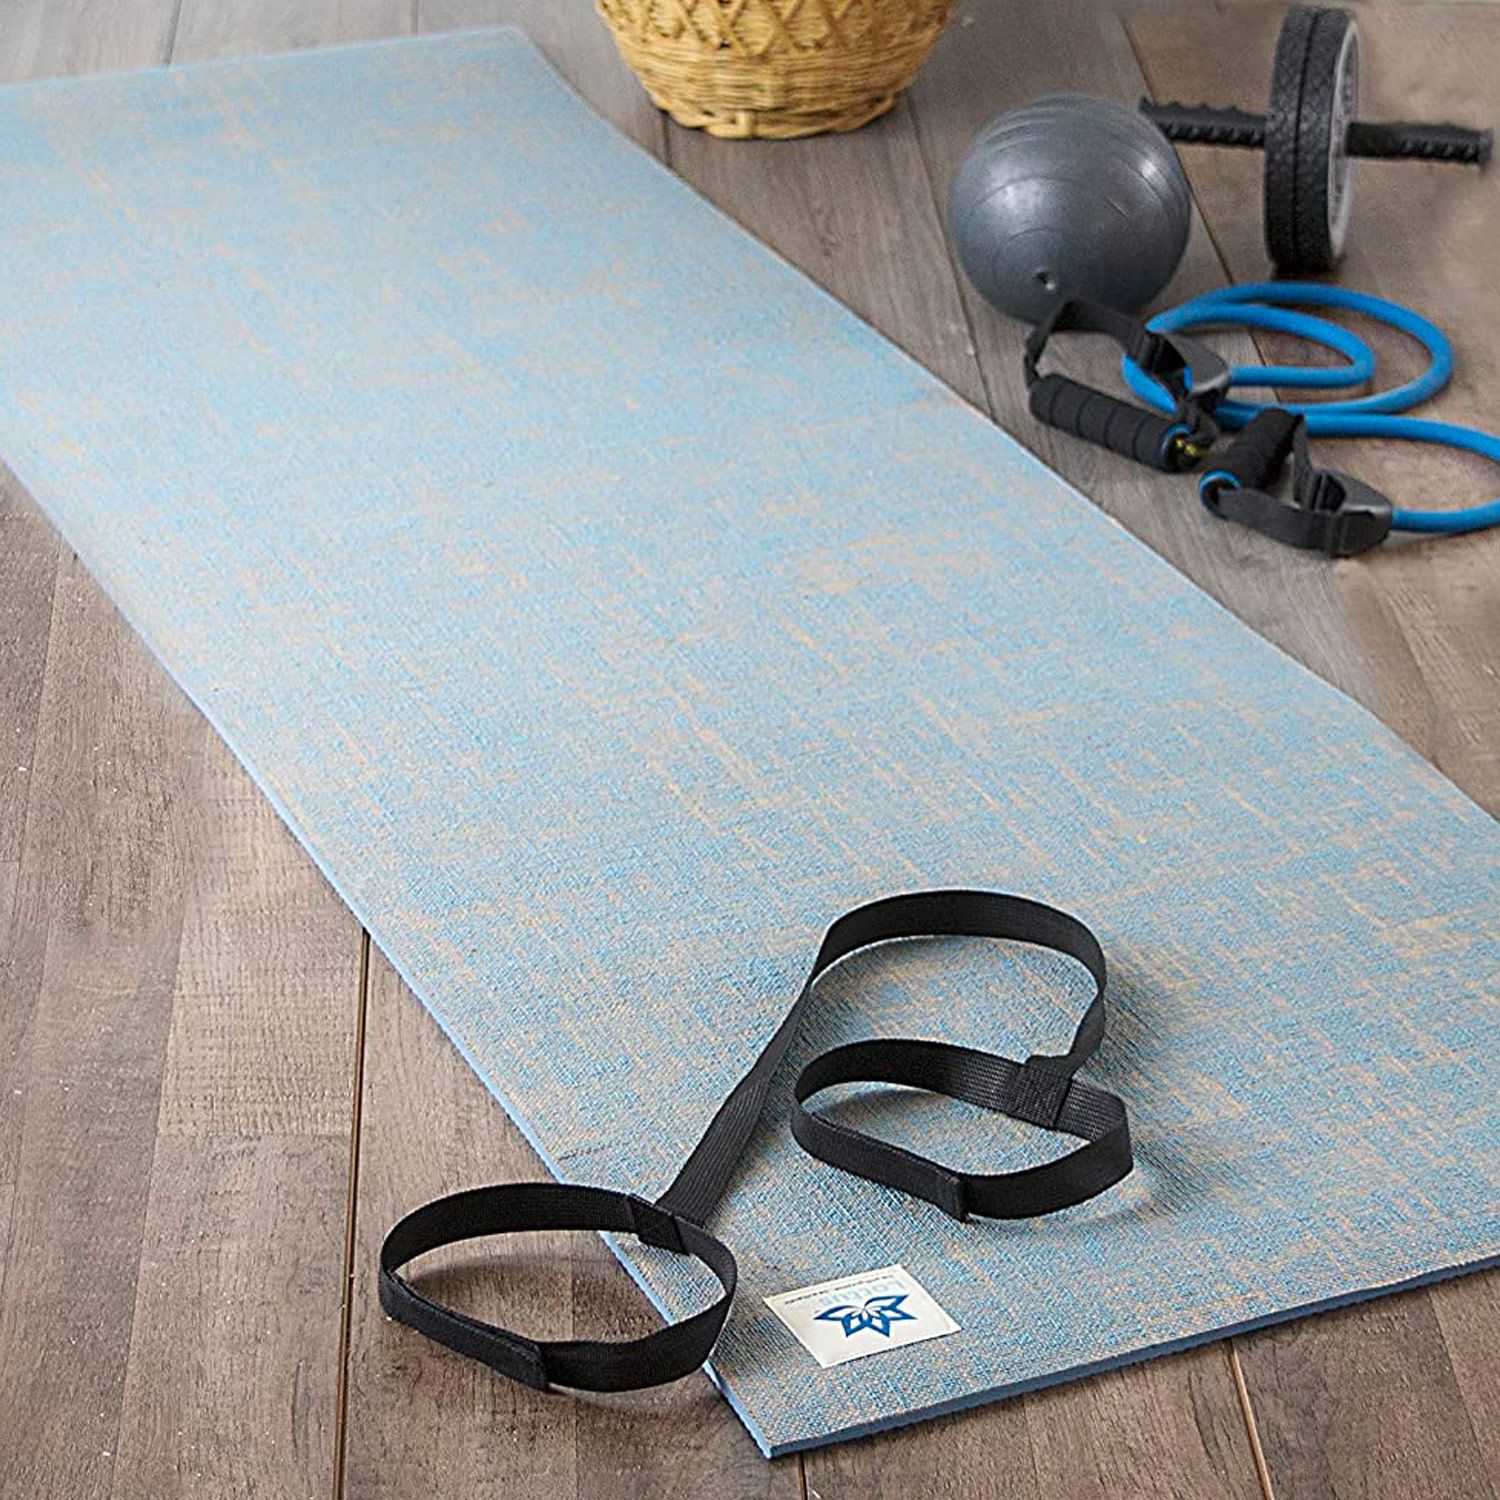 favorite yoga mat